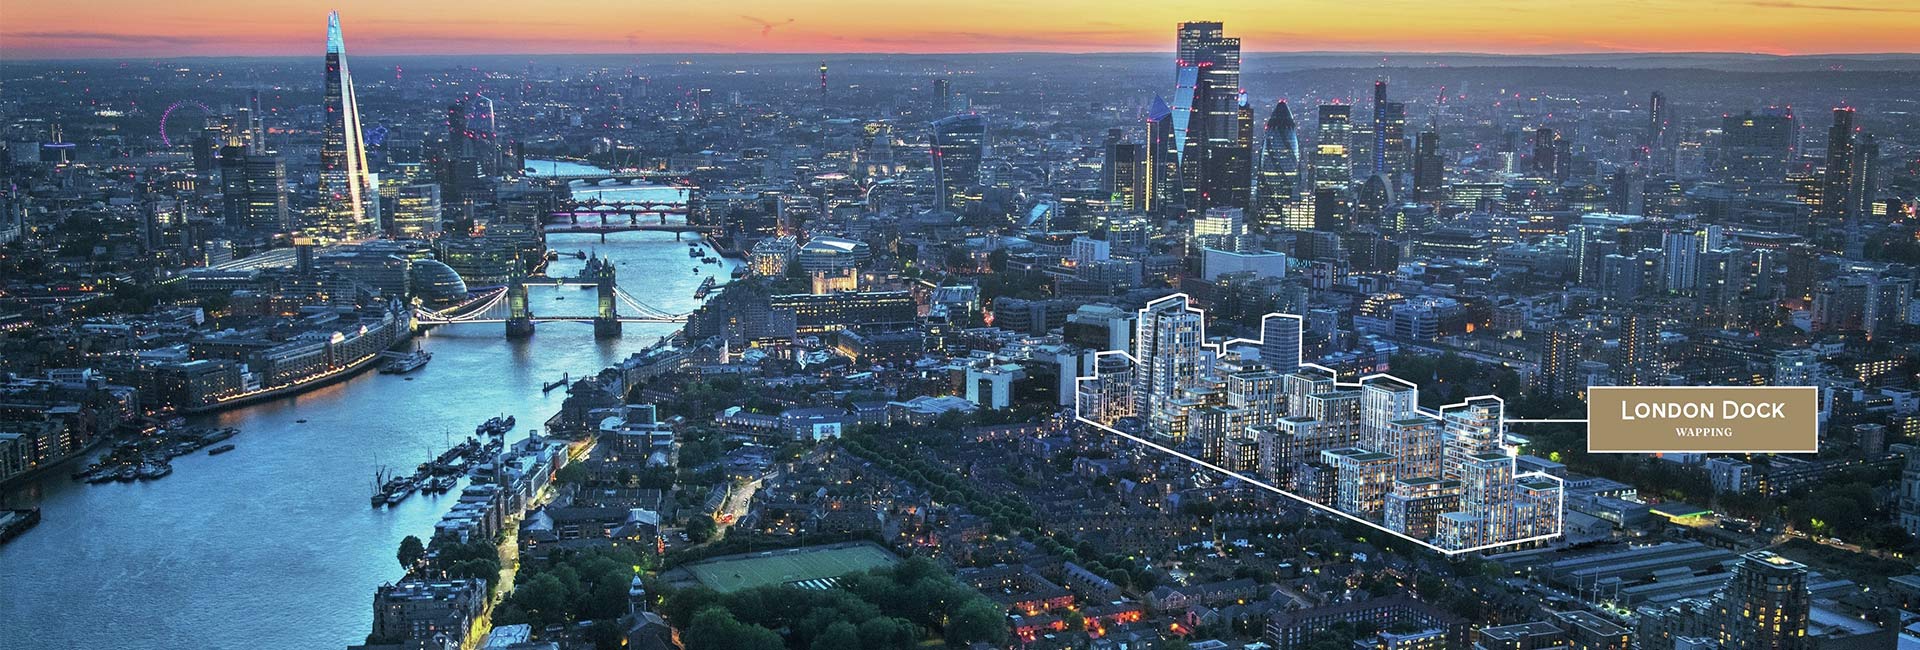 London Dock - Aerial Shot of London